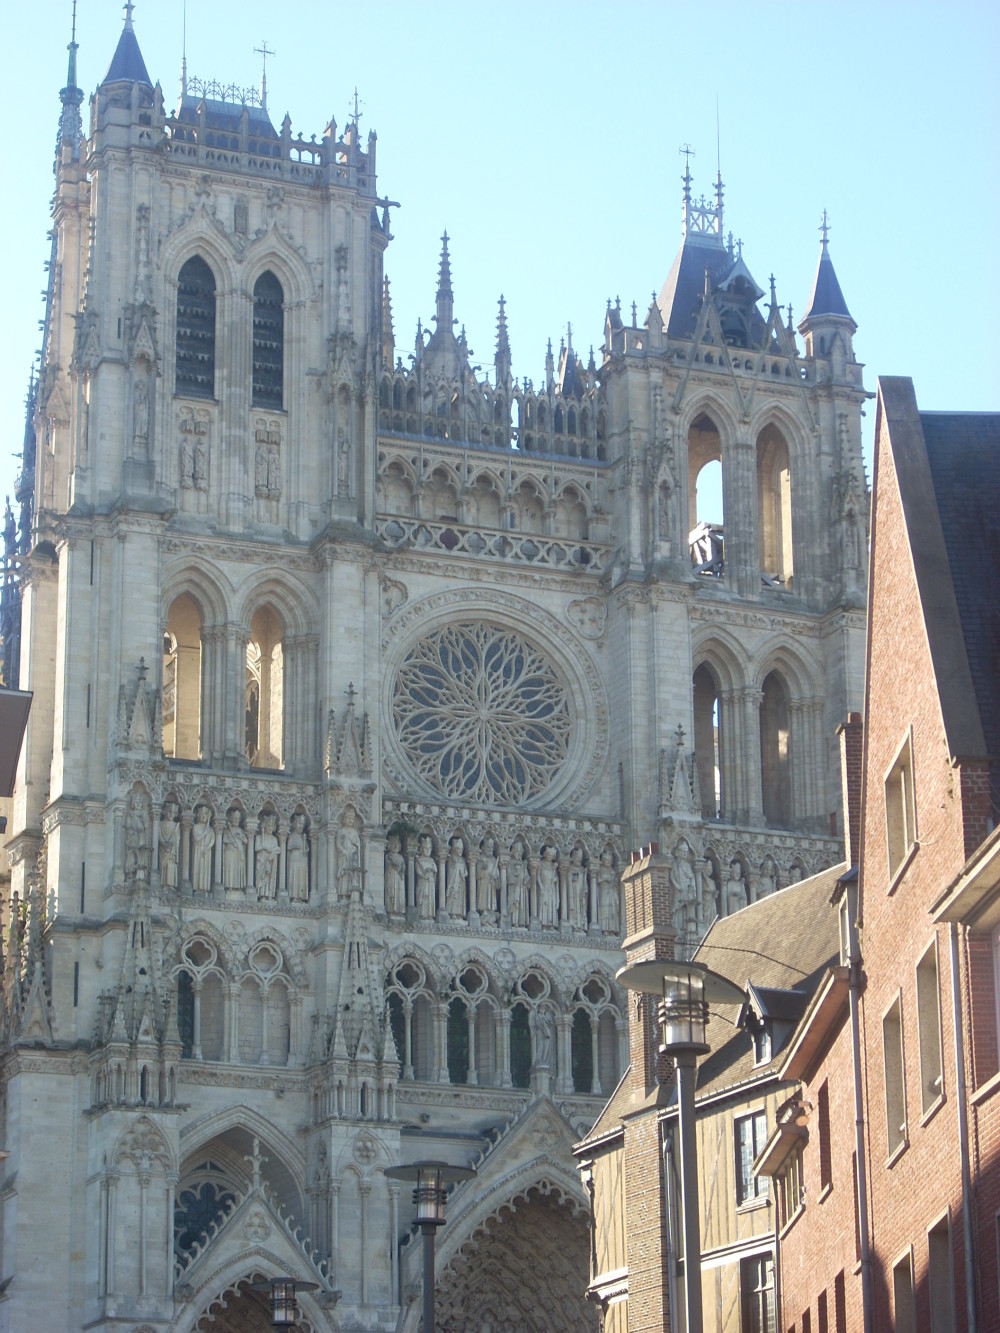 L'imposante cathédrale d'Amiens